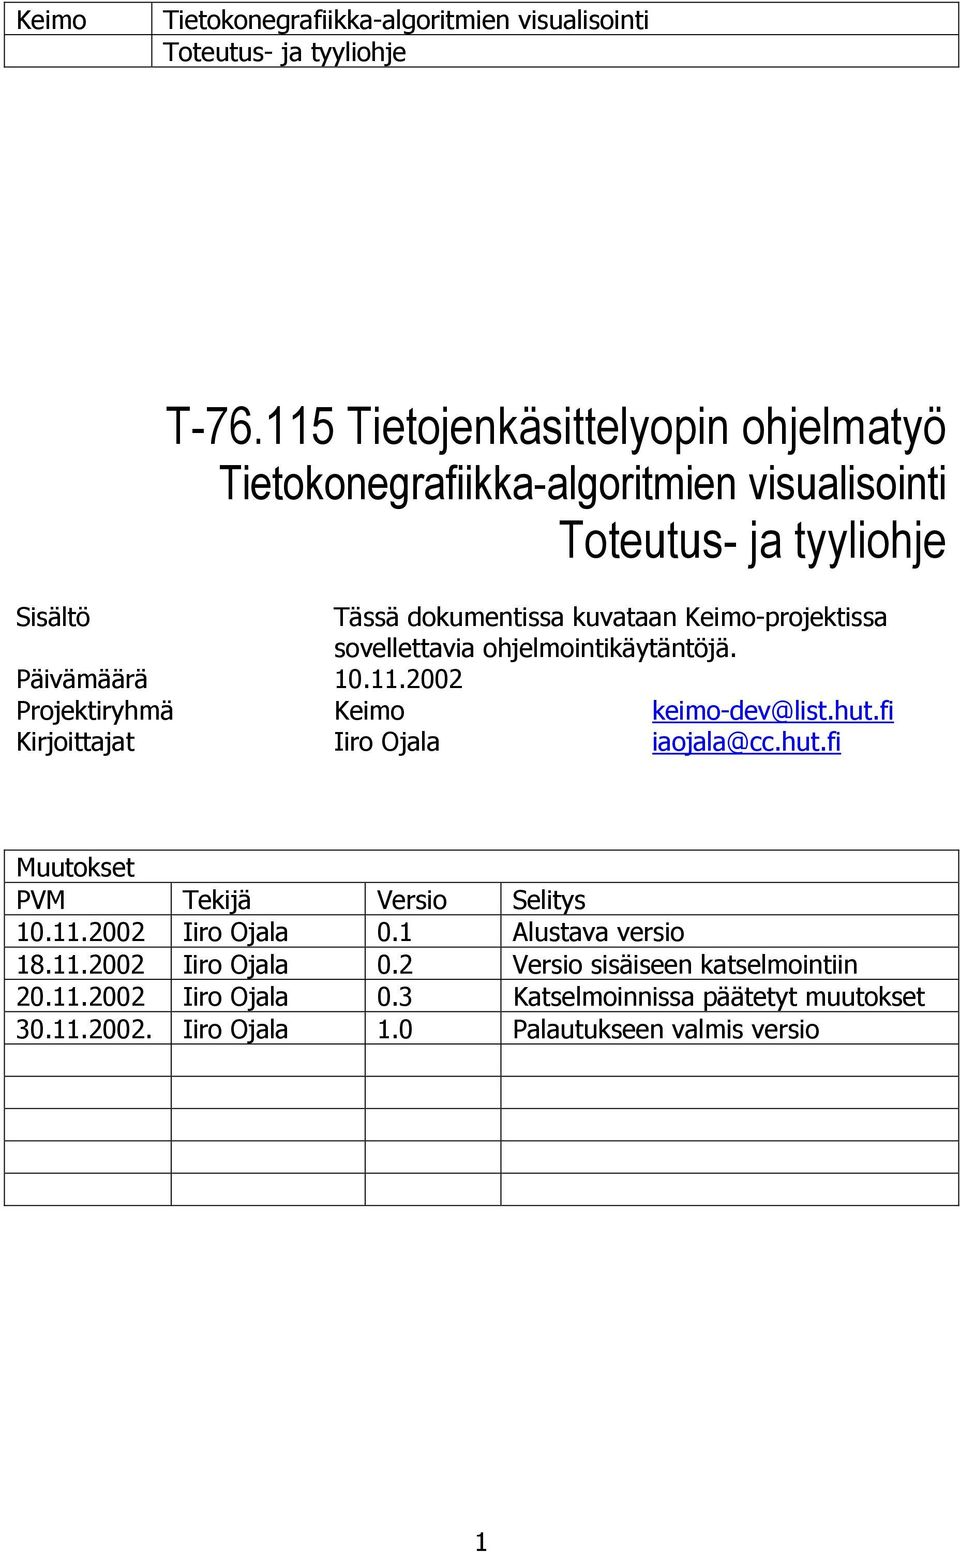 hut.fi Muutokset PVM Tekijä Versio Selitys 10.11.2002 Iiro Ojala 0.1 Alustava versio 18.11.2002 Iiro Ojala 0.2 Versio sisäiseen katselmointiin 20.